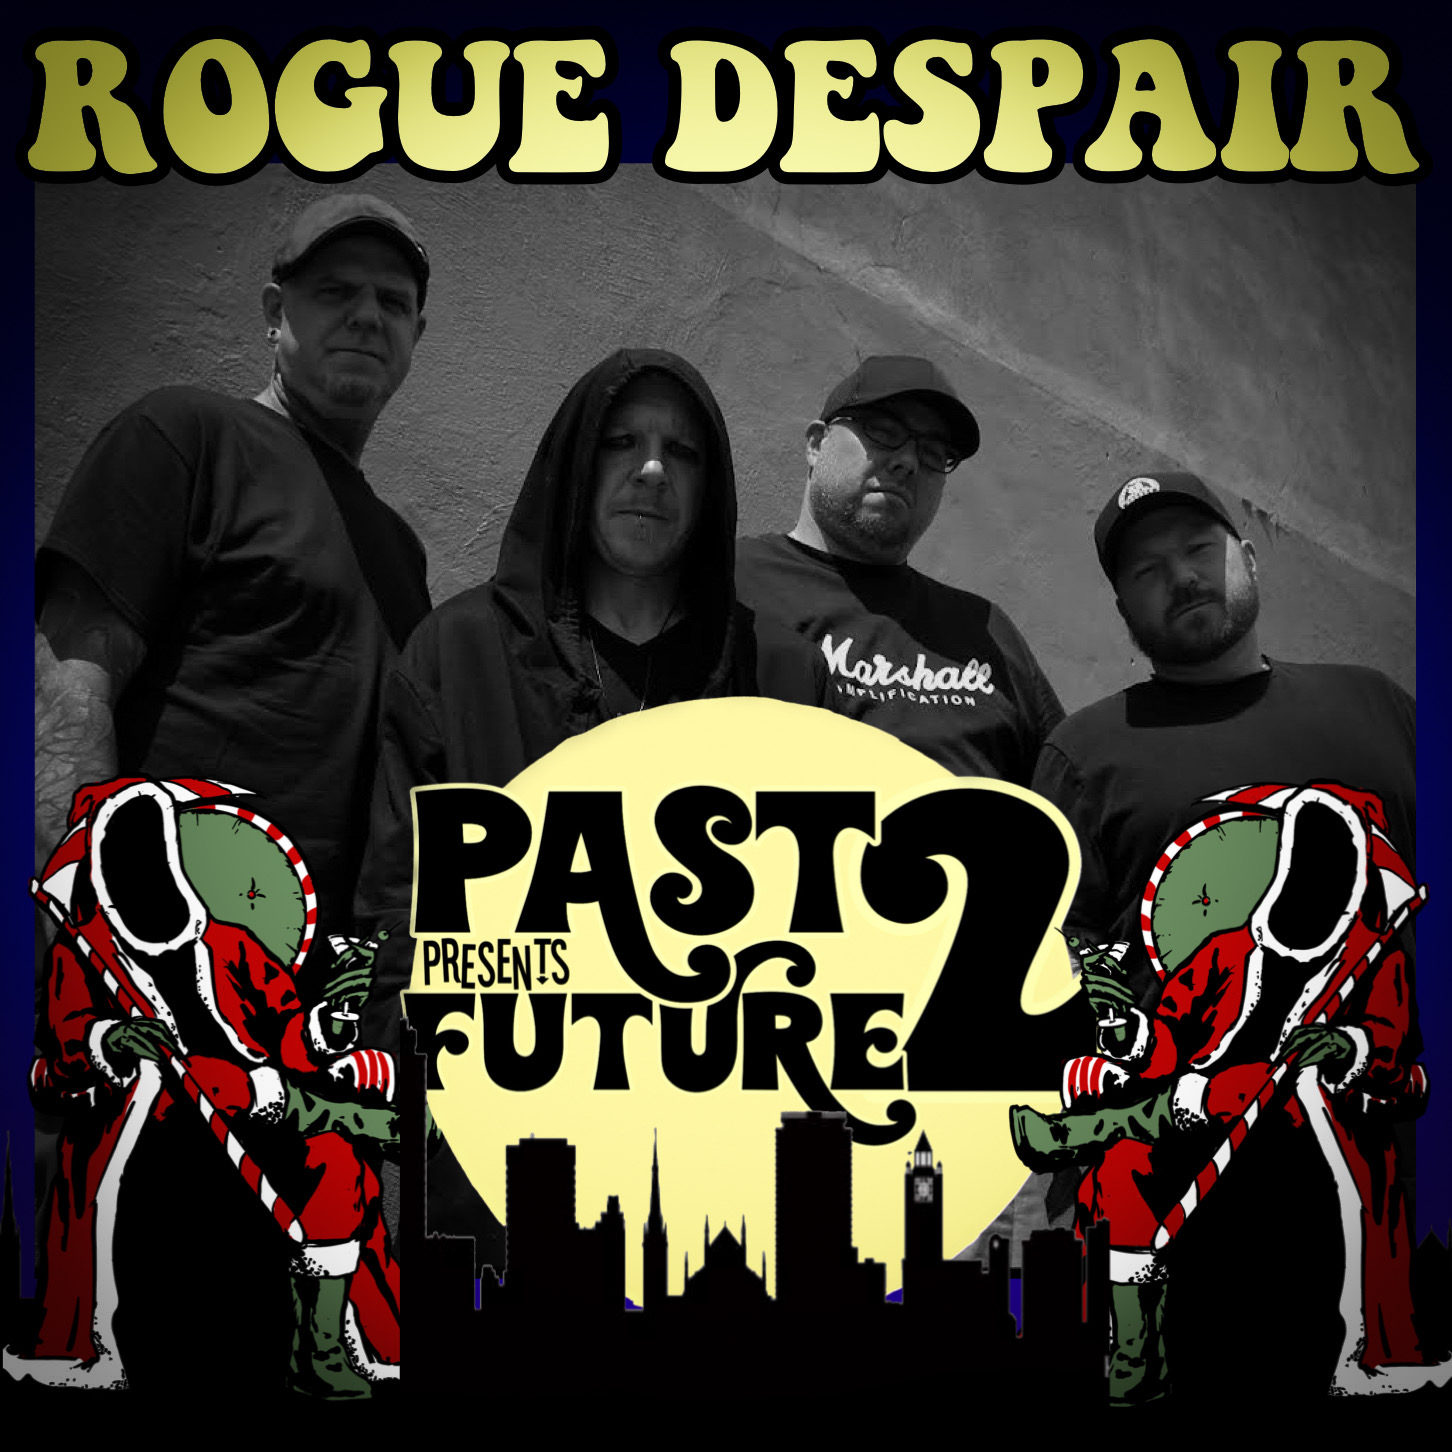 Rogue Despair At Past Presents Future